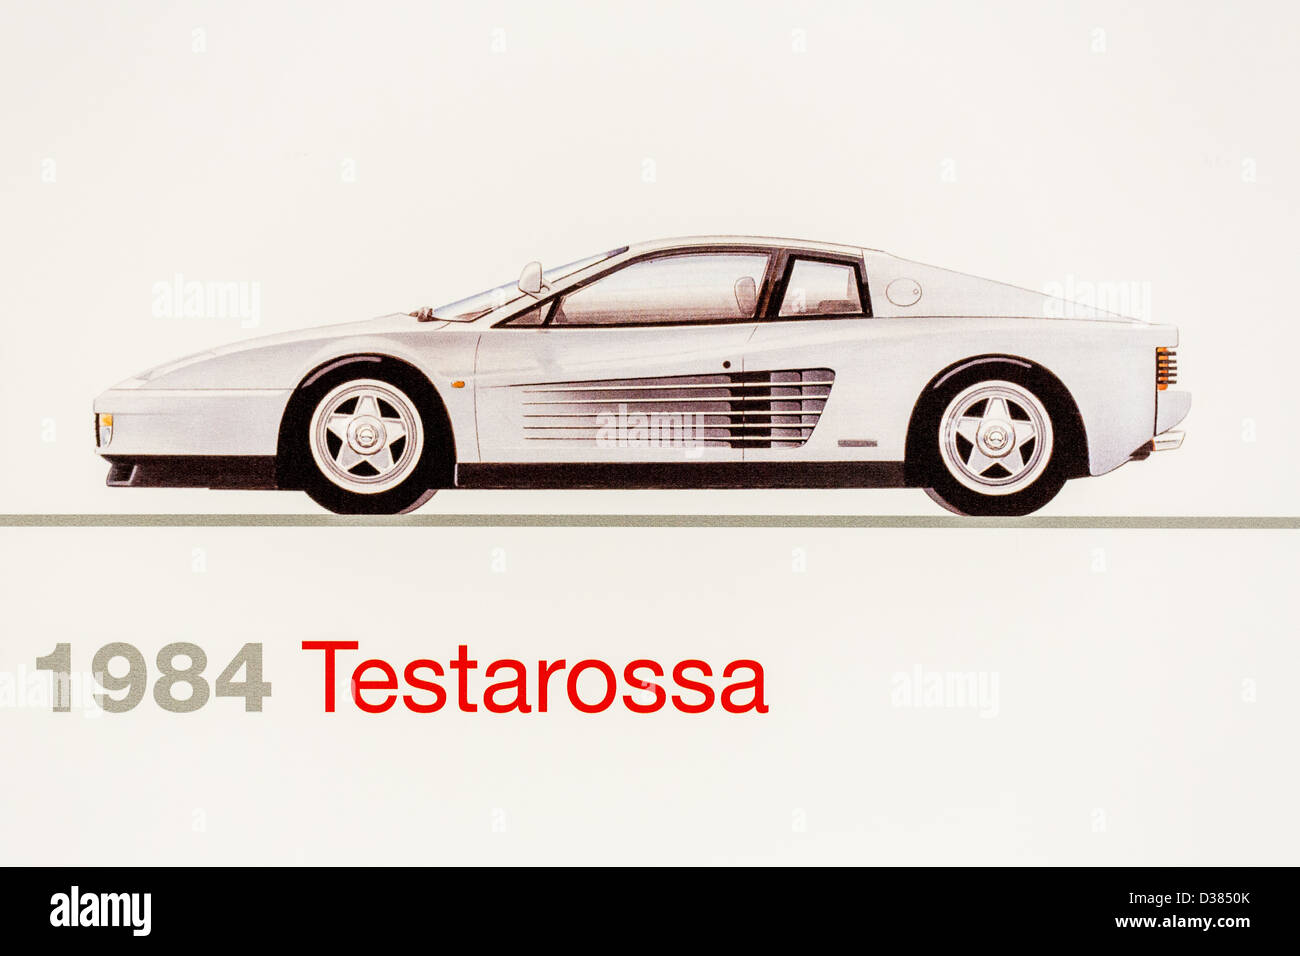 Graphic representation of a 1984 Ferrari Testarossa, Ferrari Museum, Maranello, Italy Stock Photo